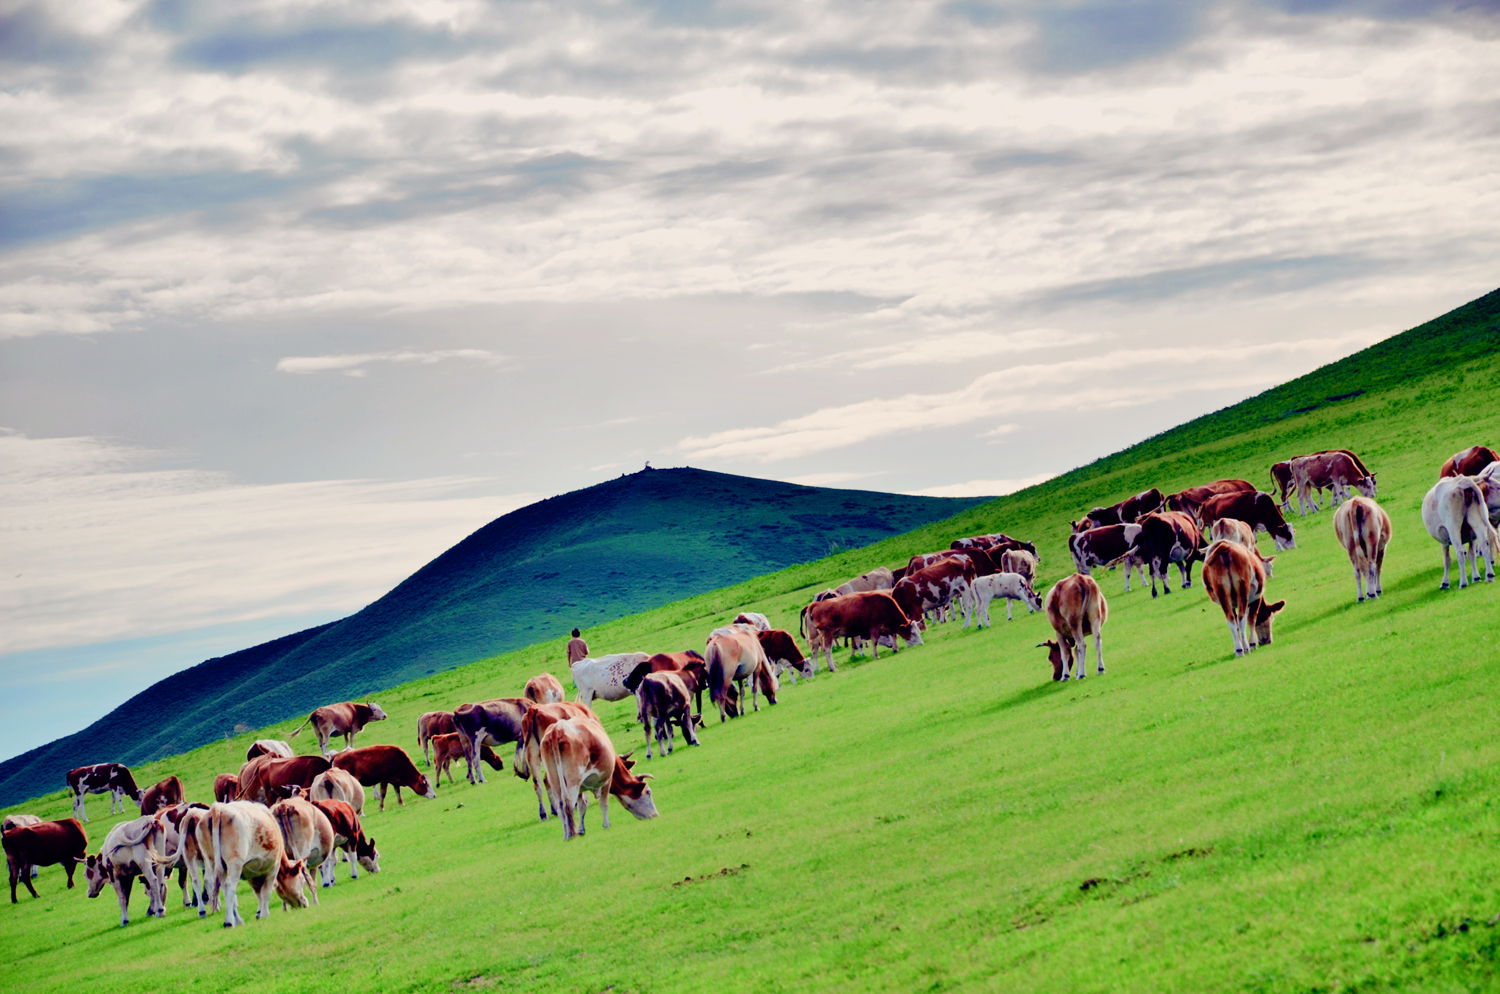 全民摄影原创图集 蒙古包与大草原 摄于上都蓝旗蒙青部落营地